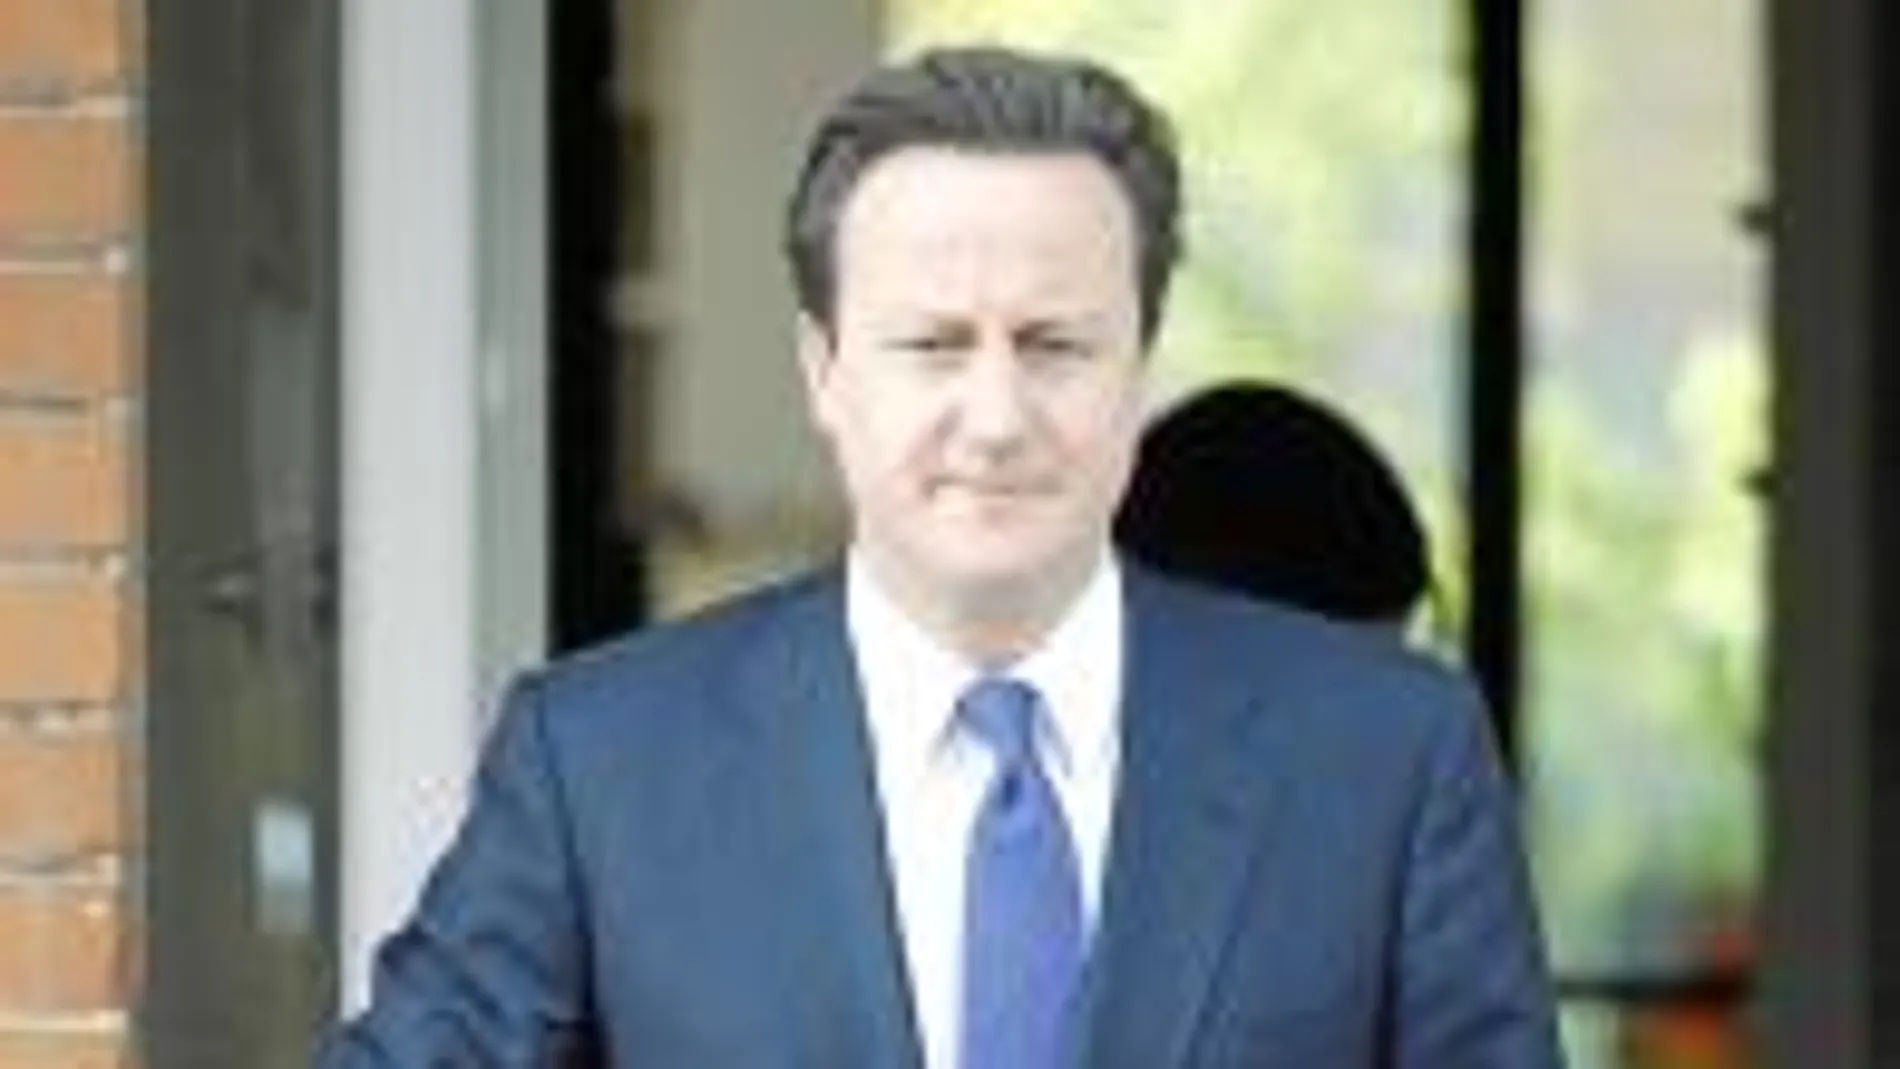 Cameron trata de asegurar que las legislaturas duren cinco años